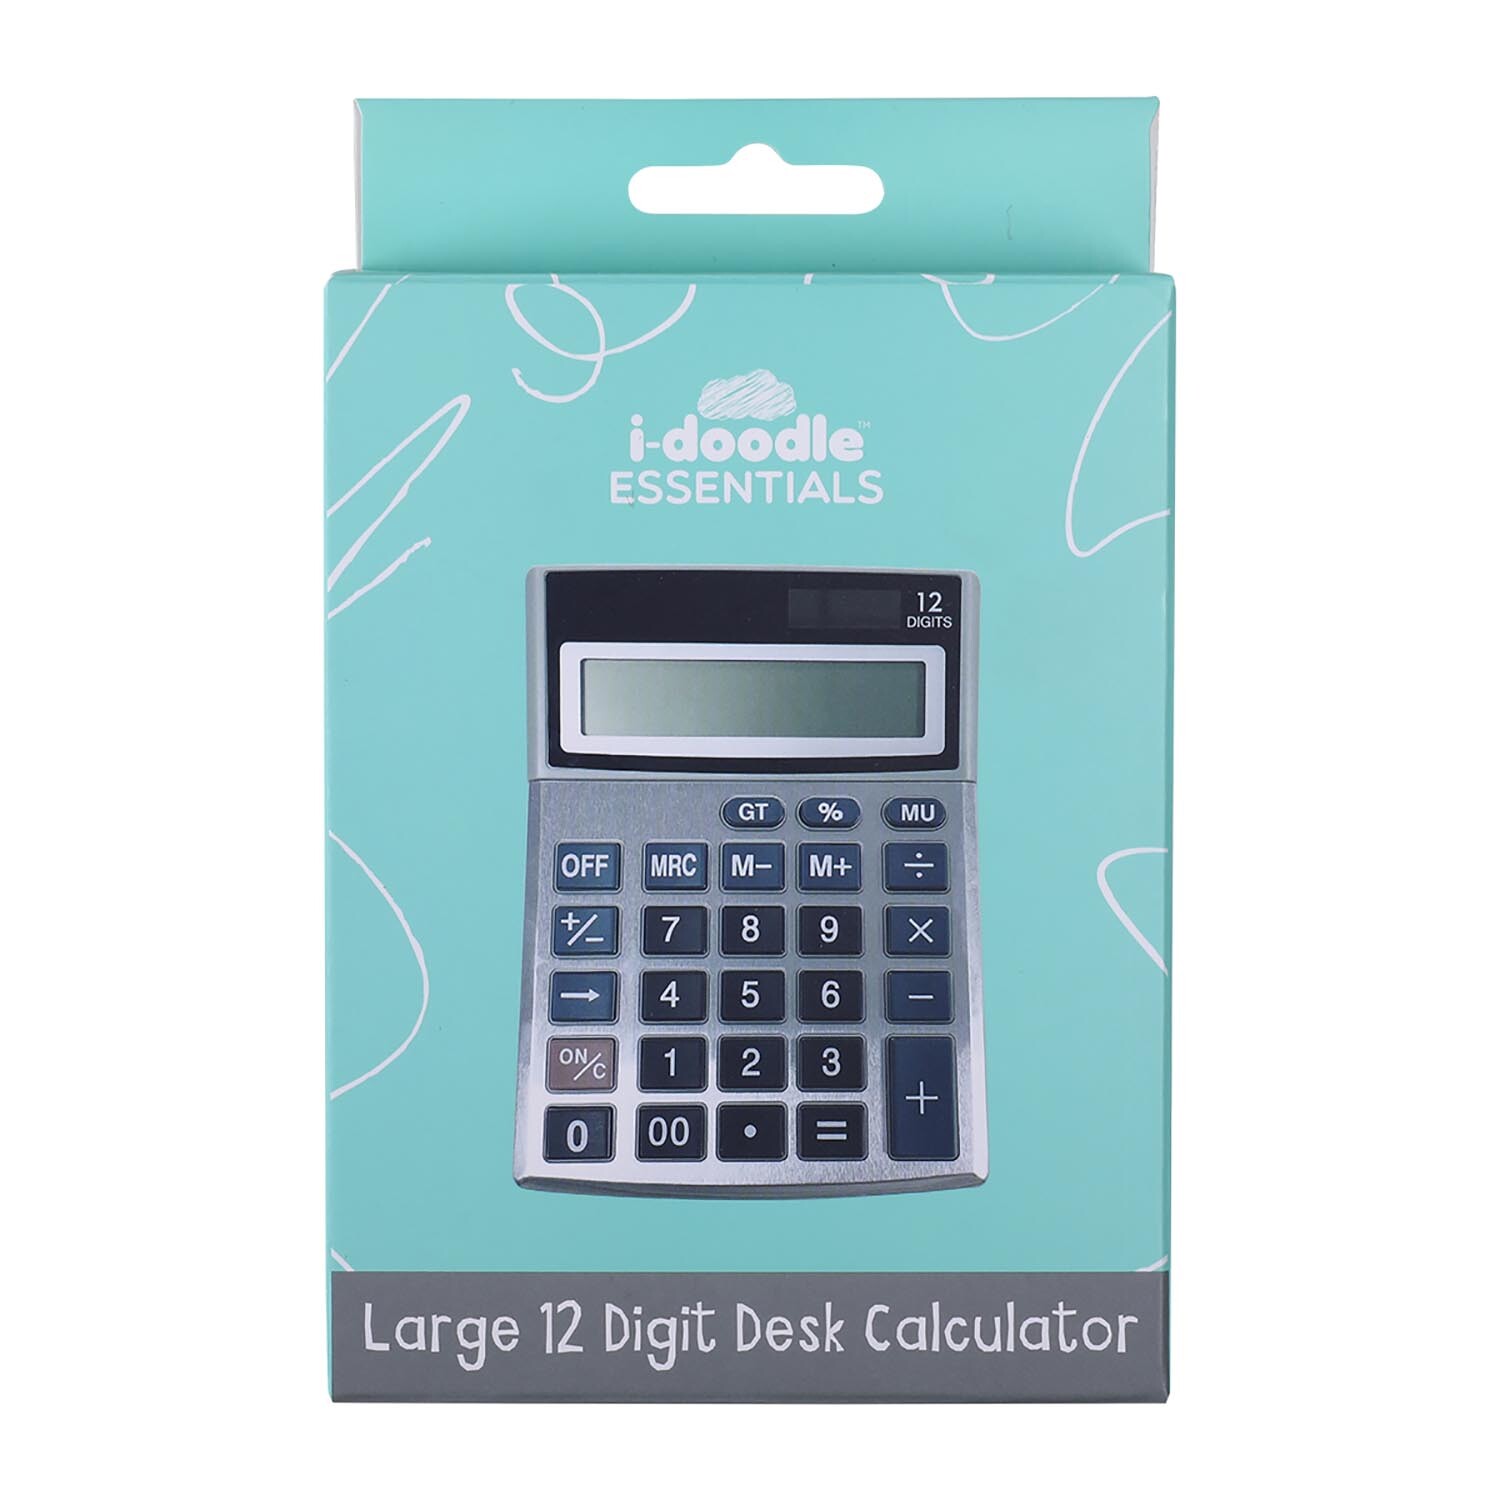 Large 12 Digit Desk Calculator Image